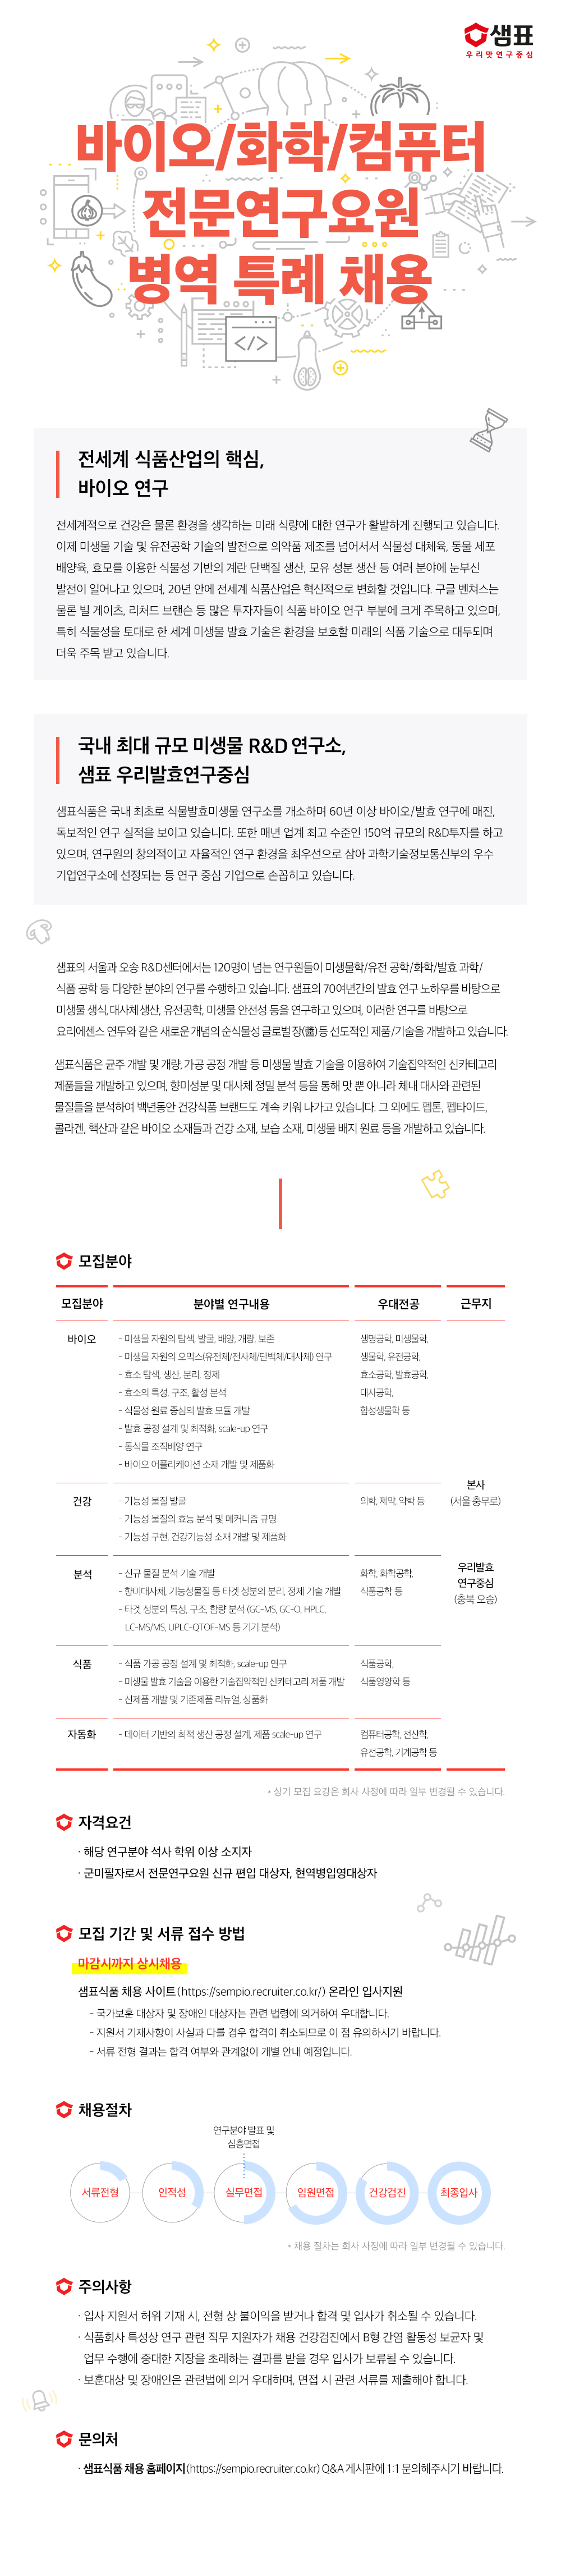 1. 샘표식품_2022_병역특례_채용공고.png